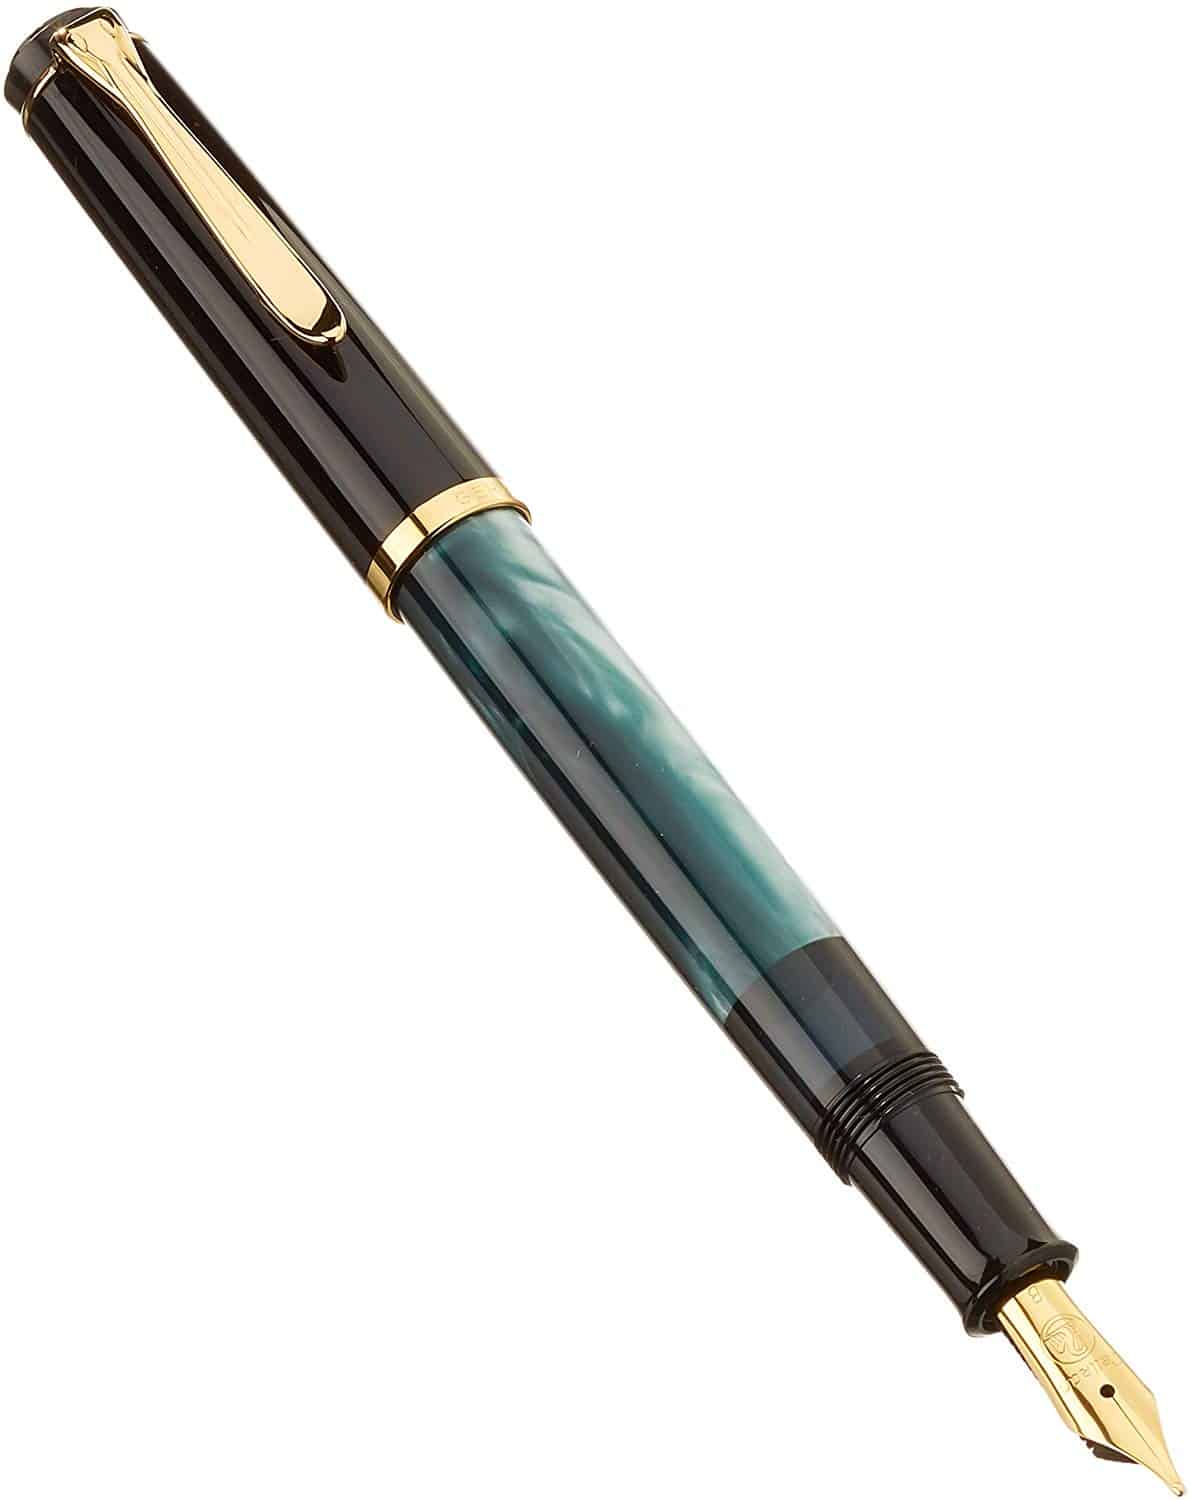 LS Kolben Füller Füllfederhalter Kolbenfüller Transparent Gold Piston Pen Nib 